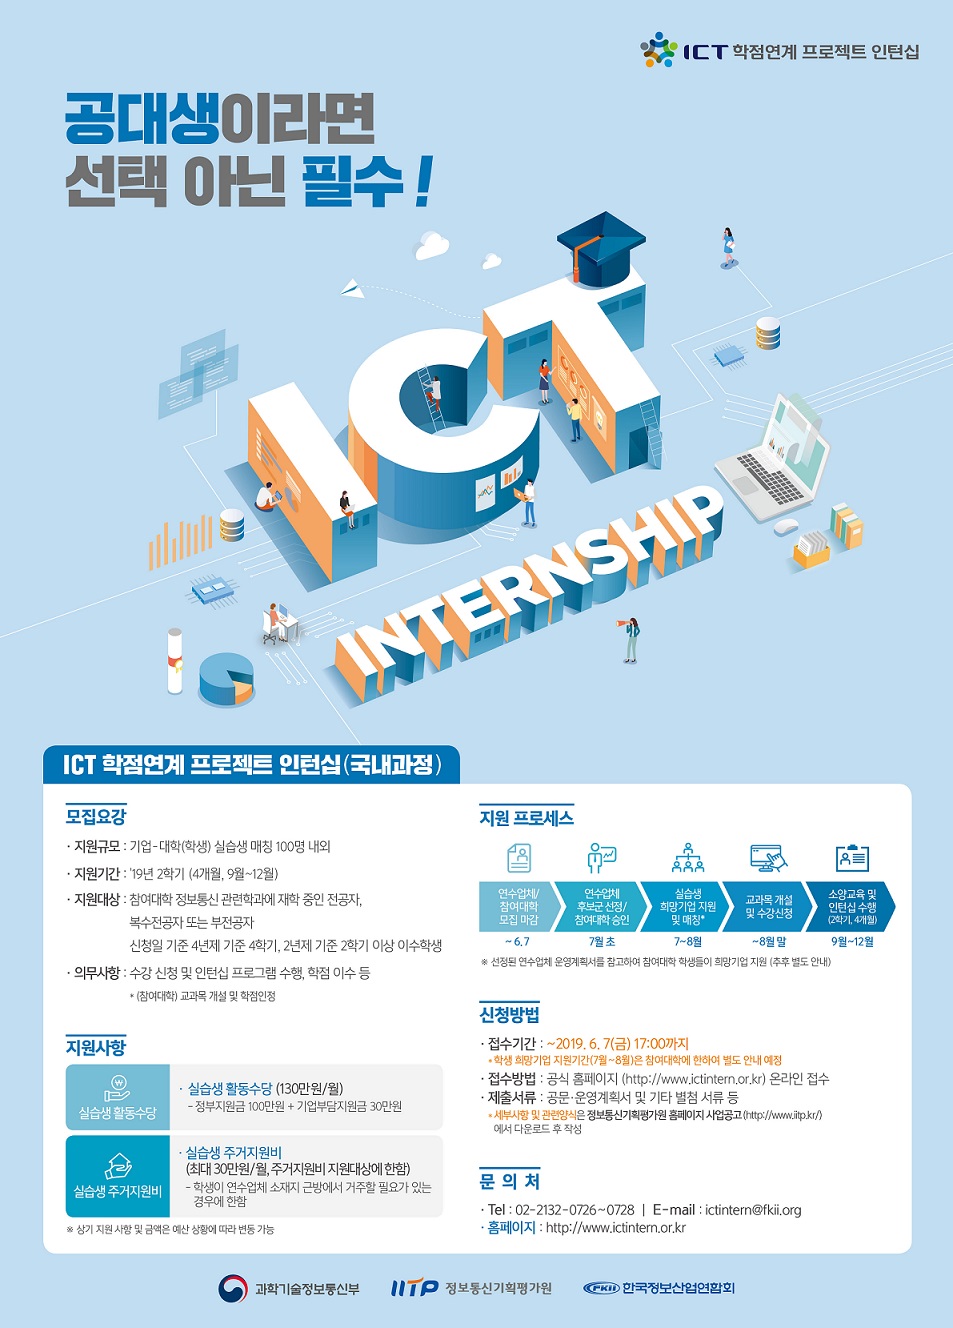 6. [ICT 학점연계 프로젝트 인턴십] 2019년 국내 포스터